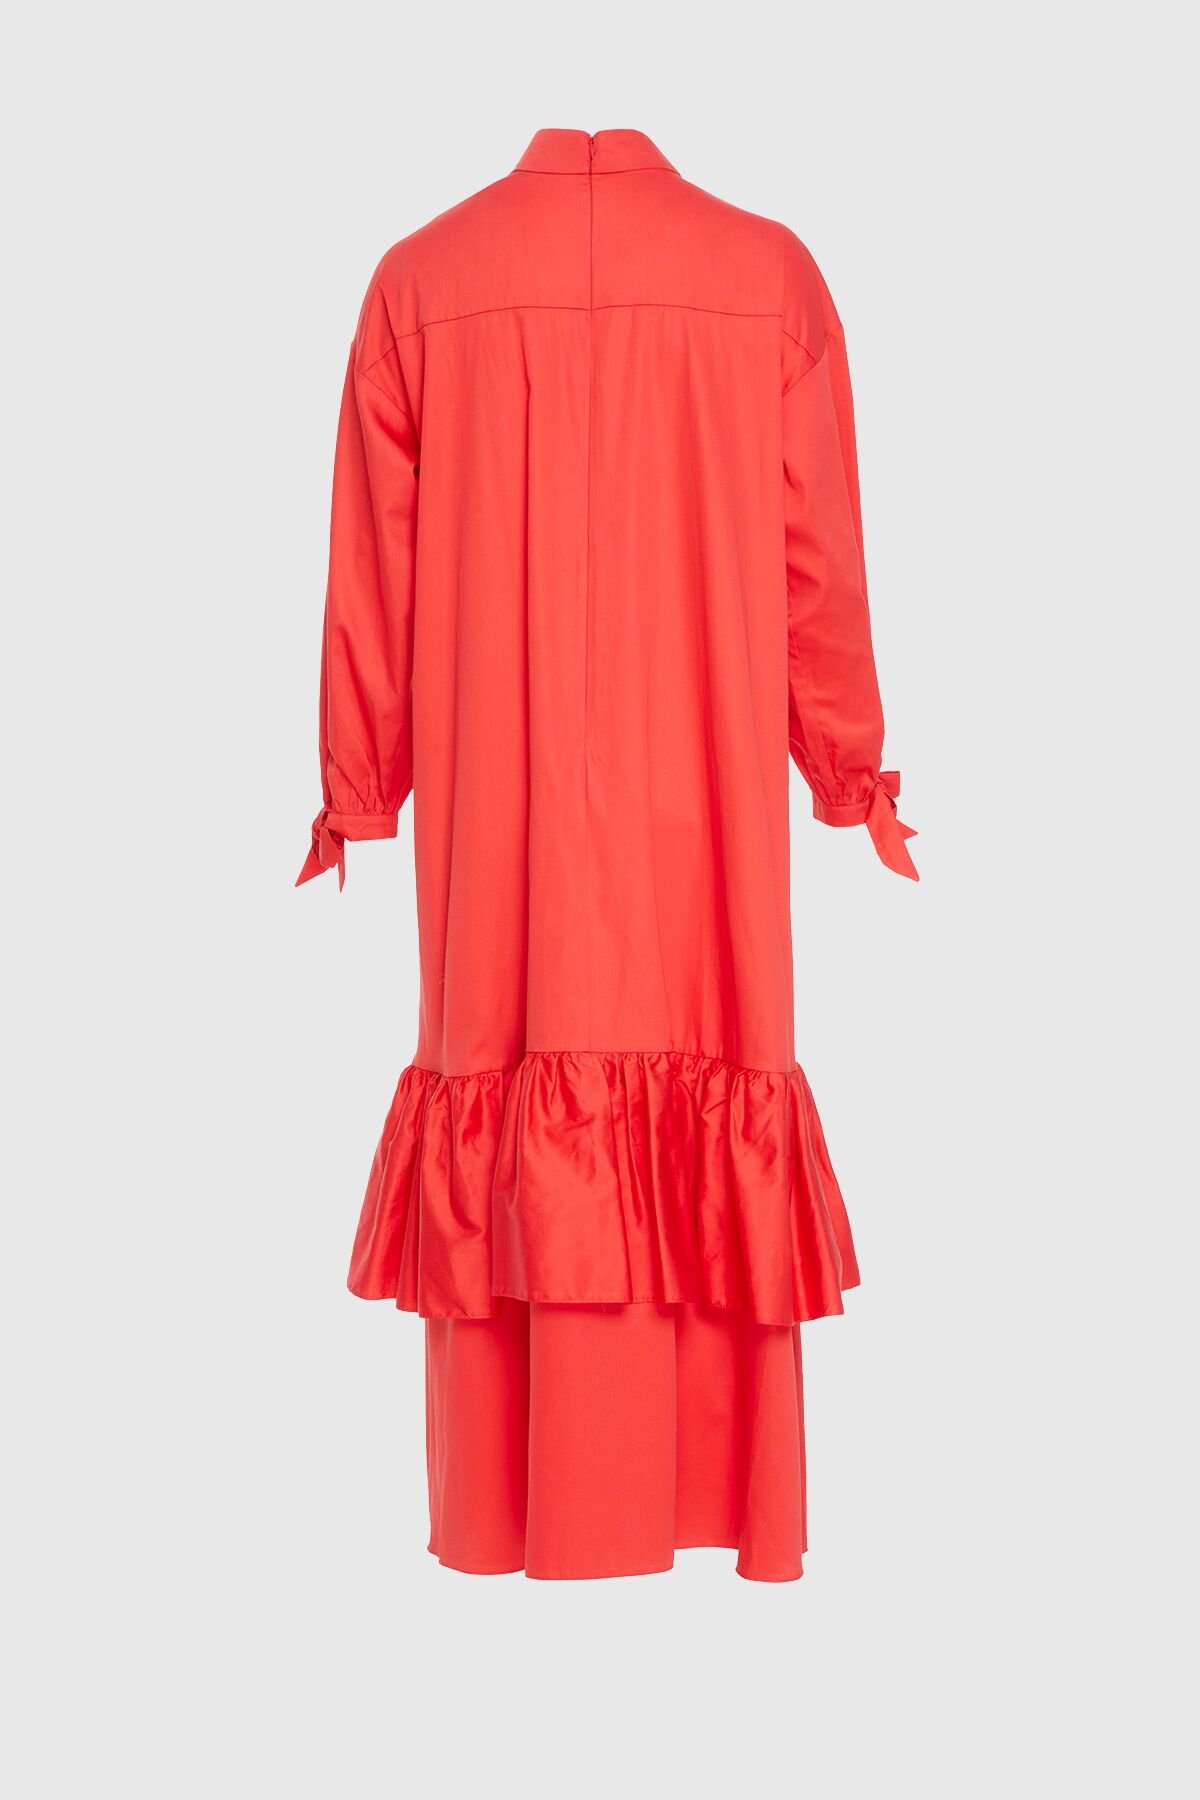 İşleme Detaylı Etek Kısmı Kat Kat Uzun Kırmızı Poplin Elbise